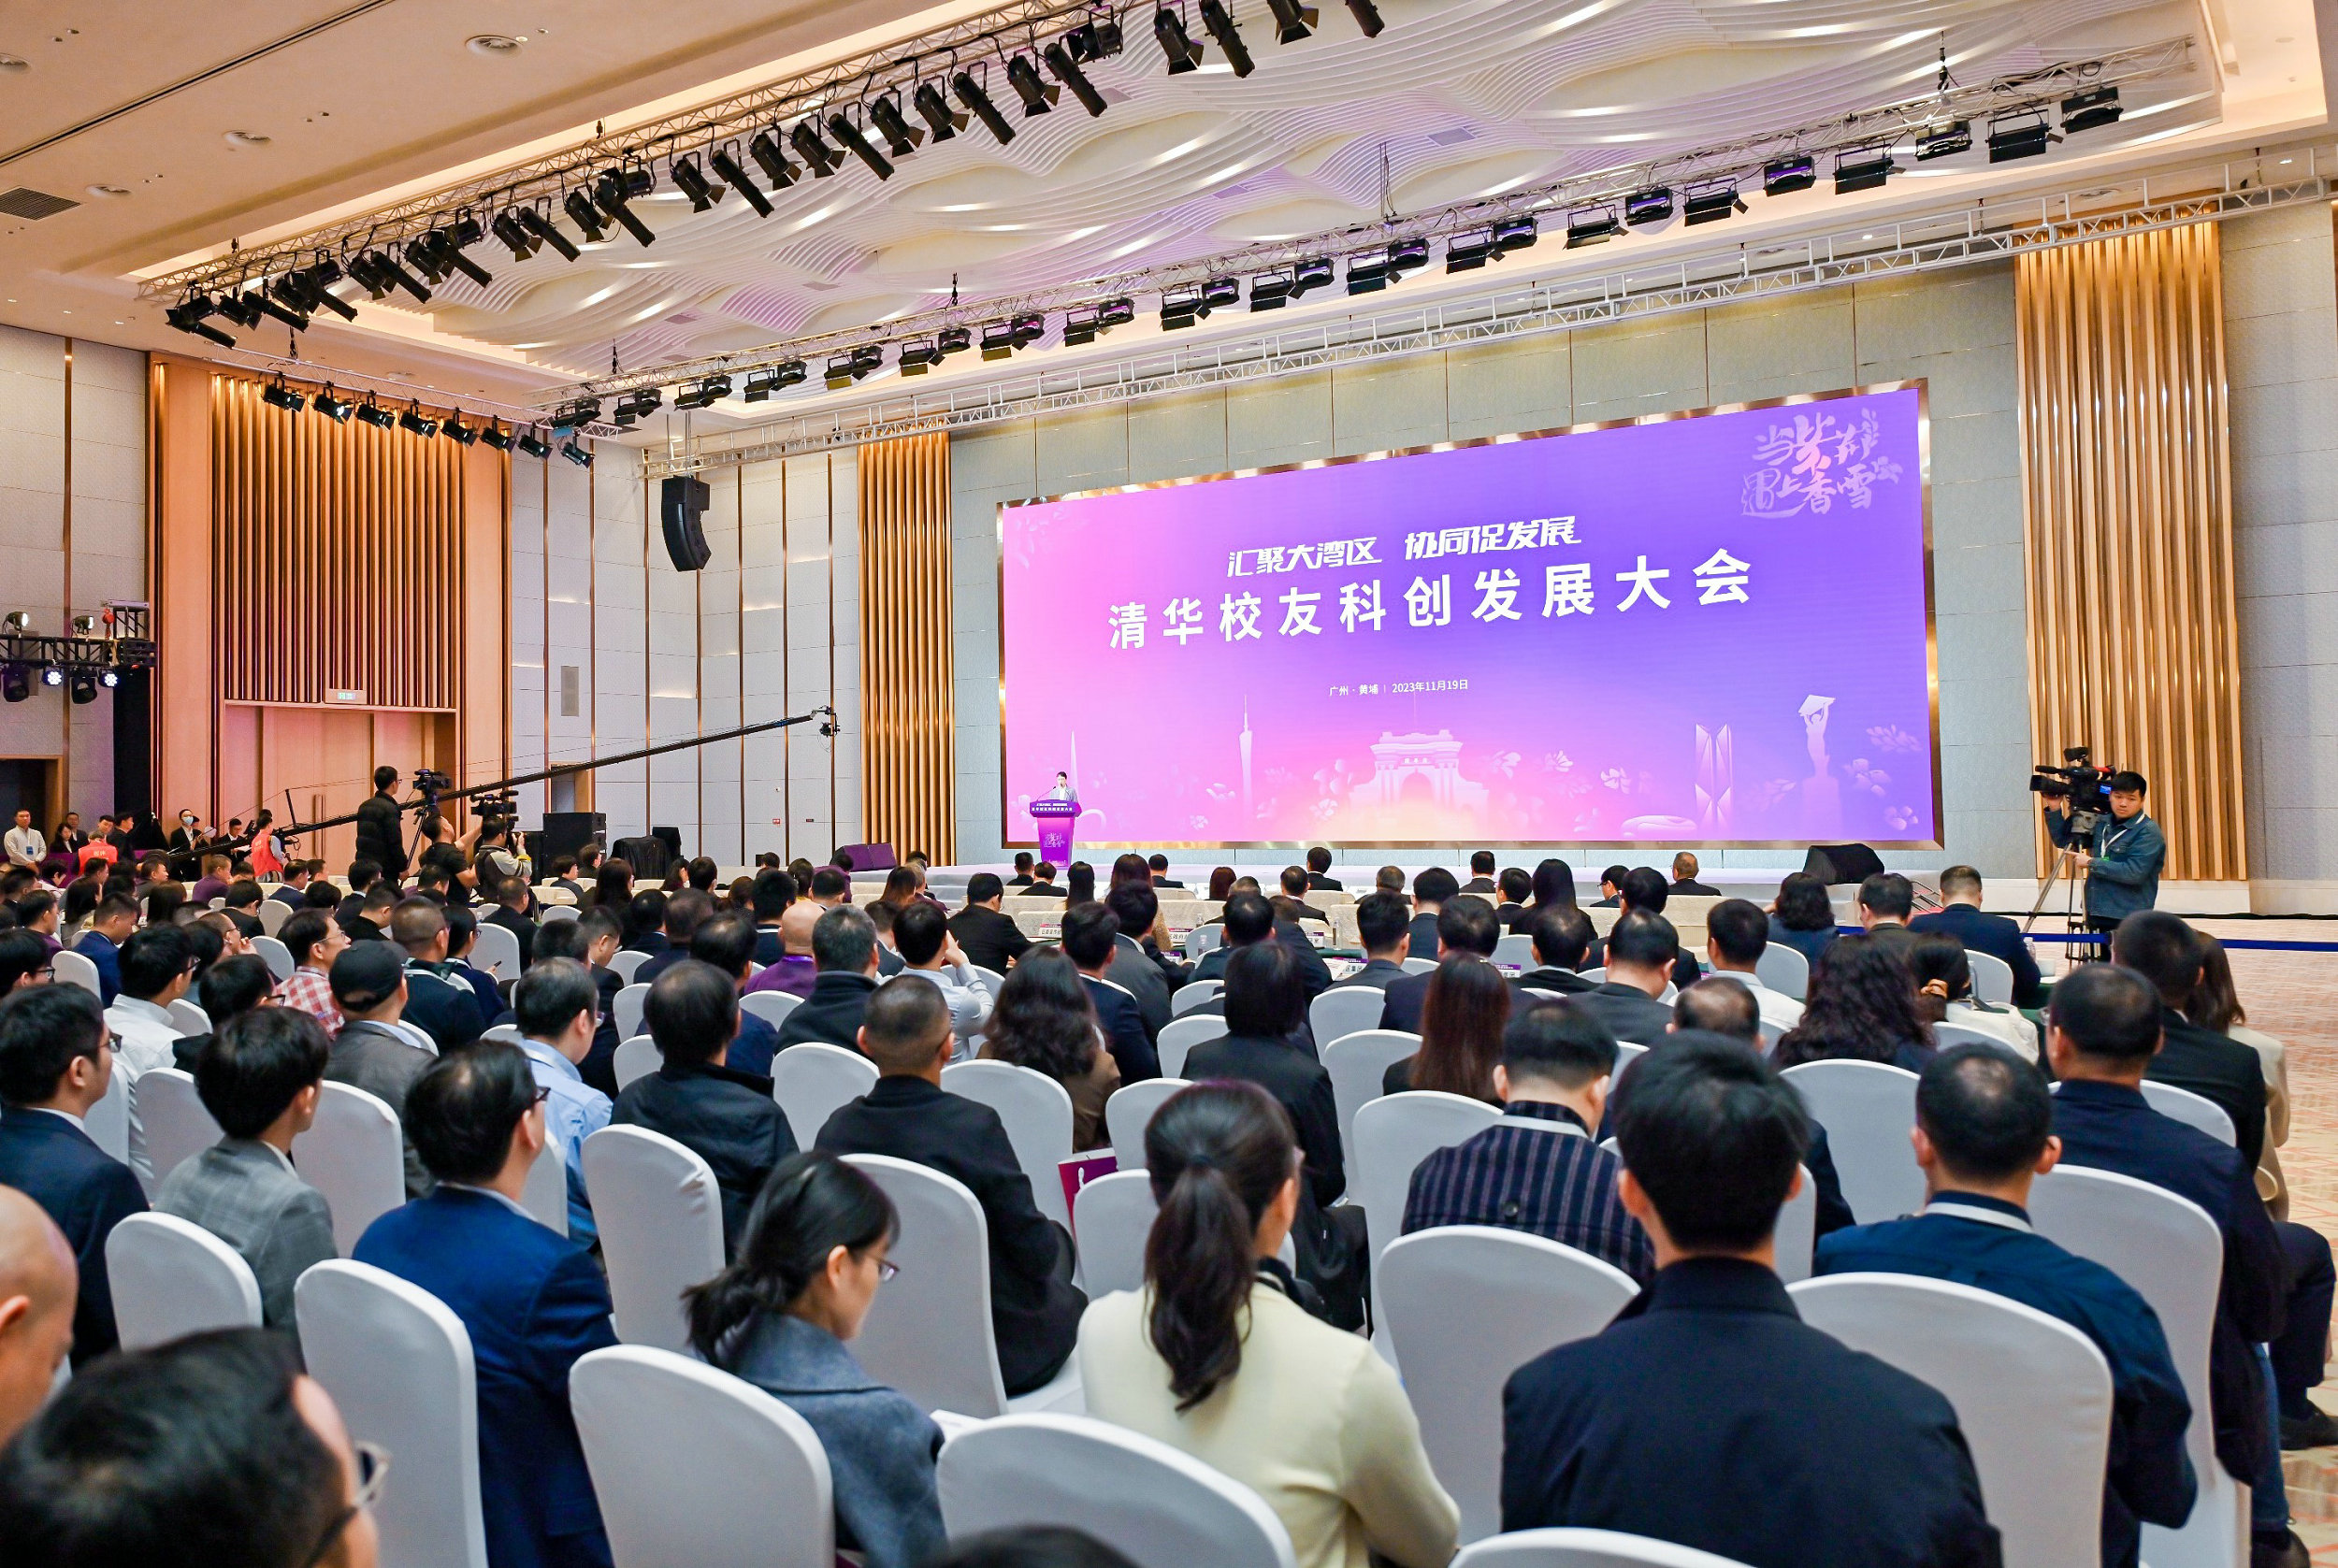 清華校友科創發展大會在廣州黃埔舉行  「黃埔紫荊創業投資基金」啟動